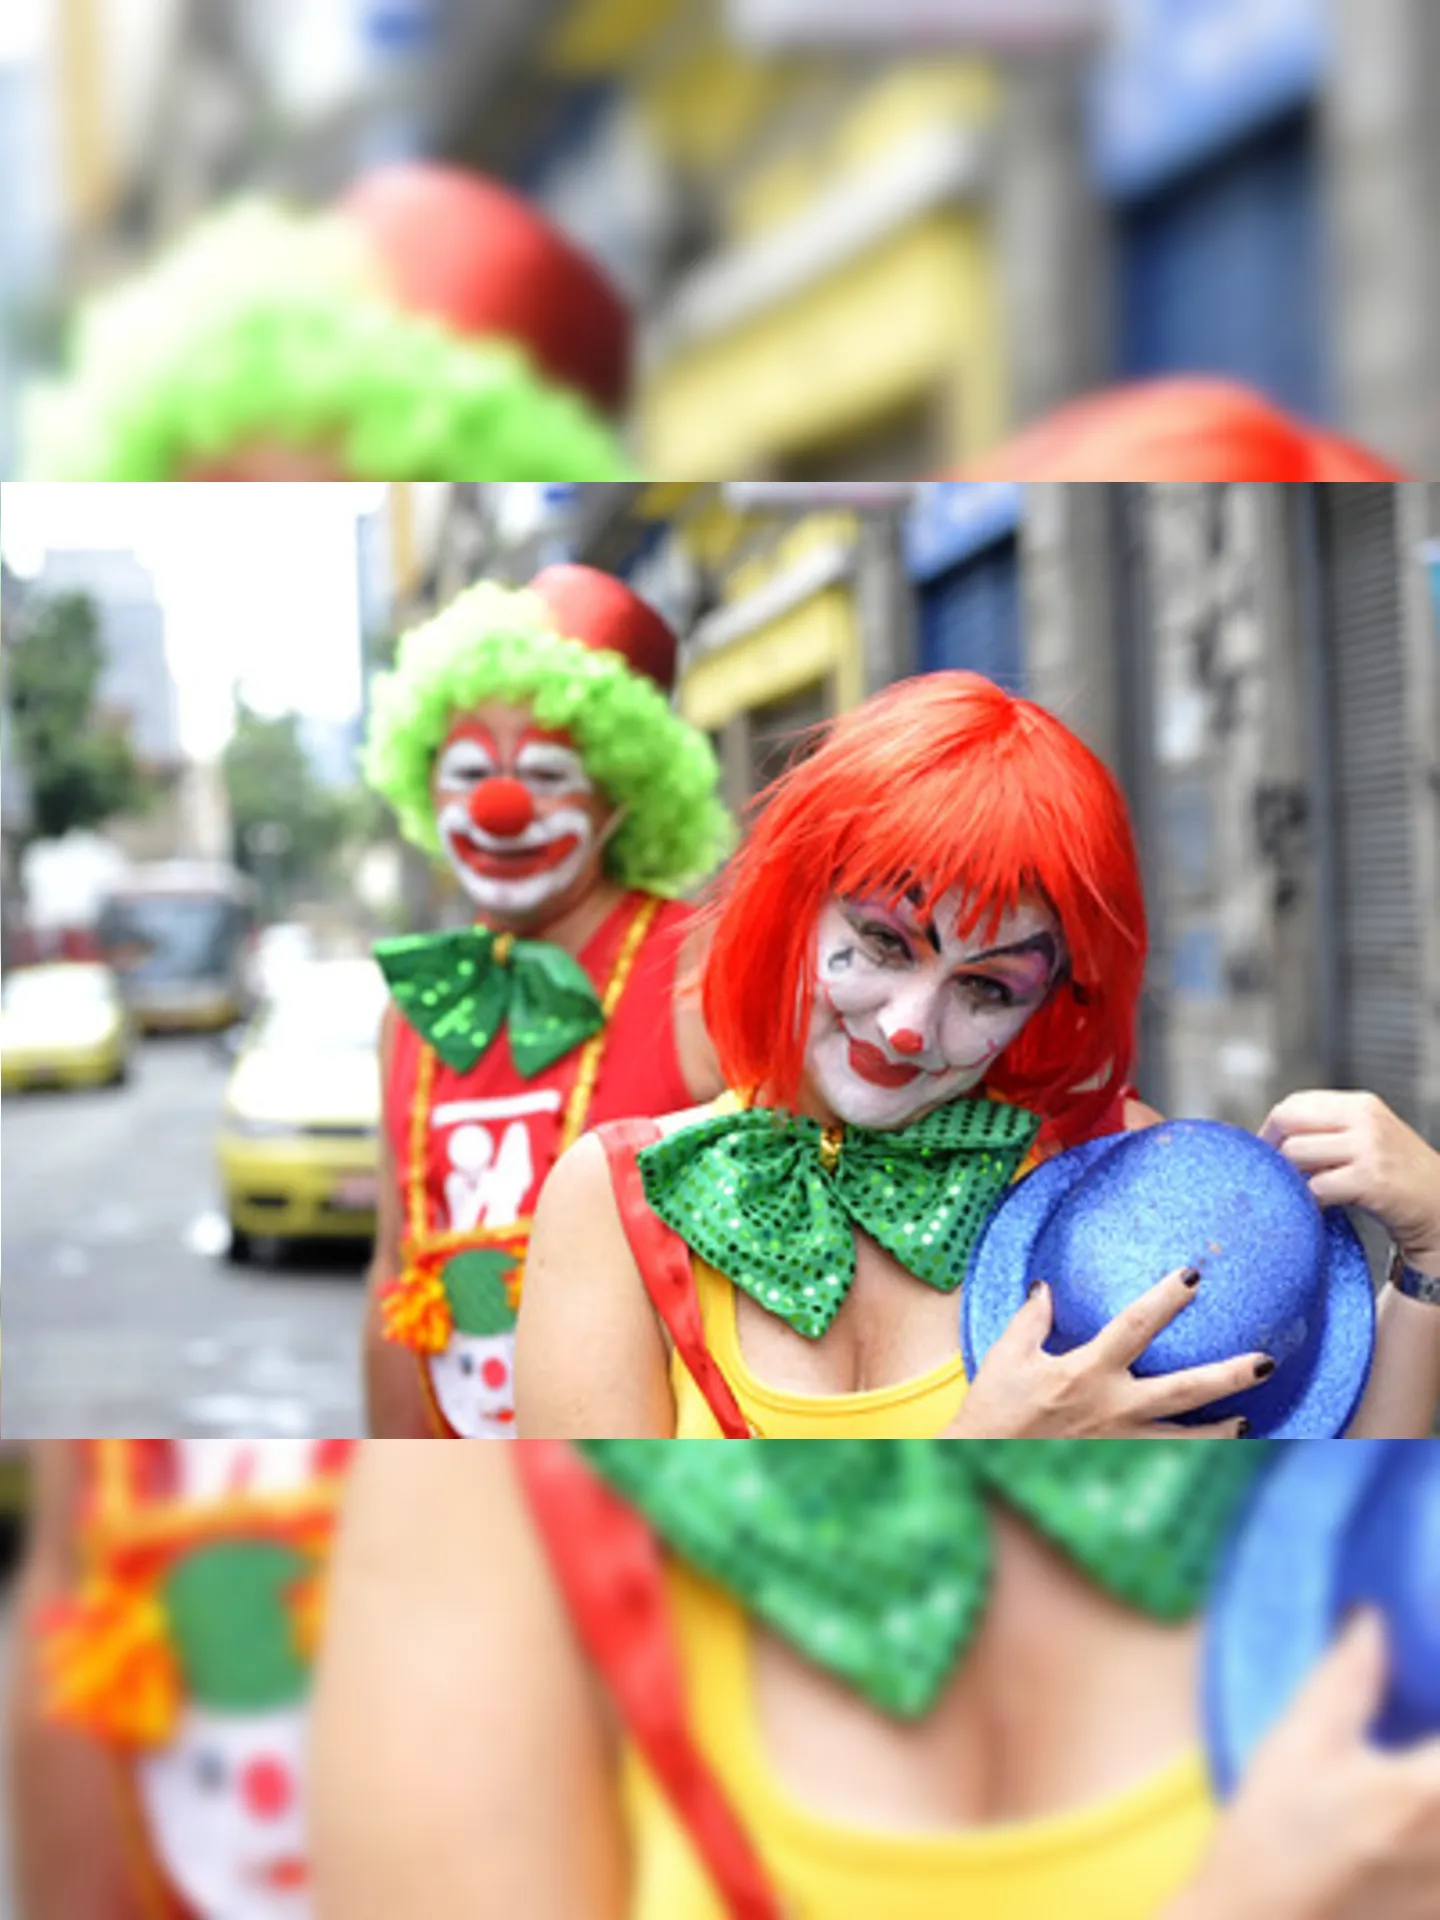 Carnaval de rua invade as ruas neste fim de semana